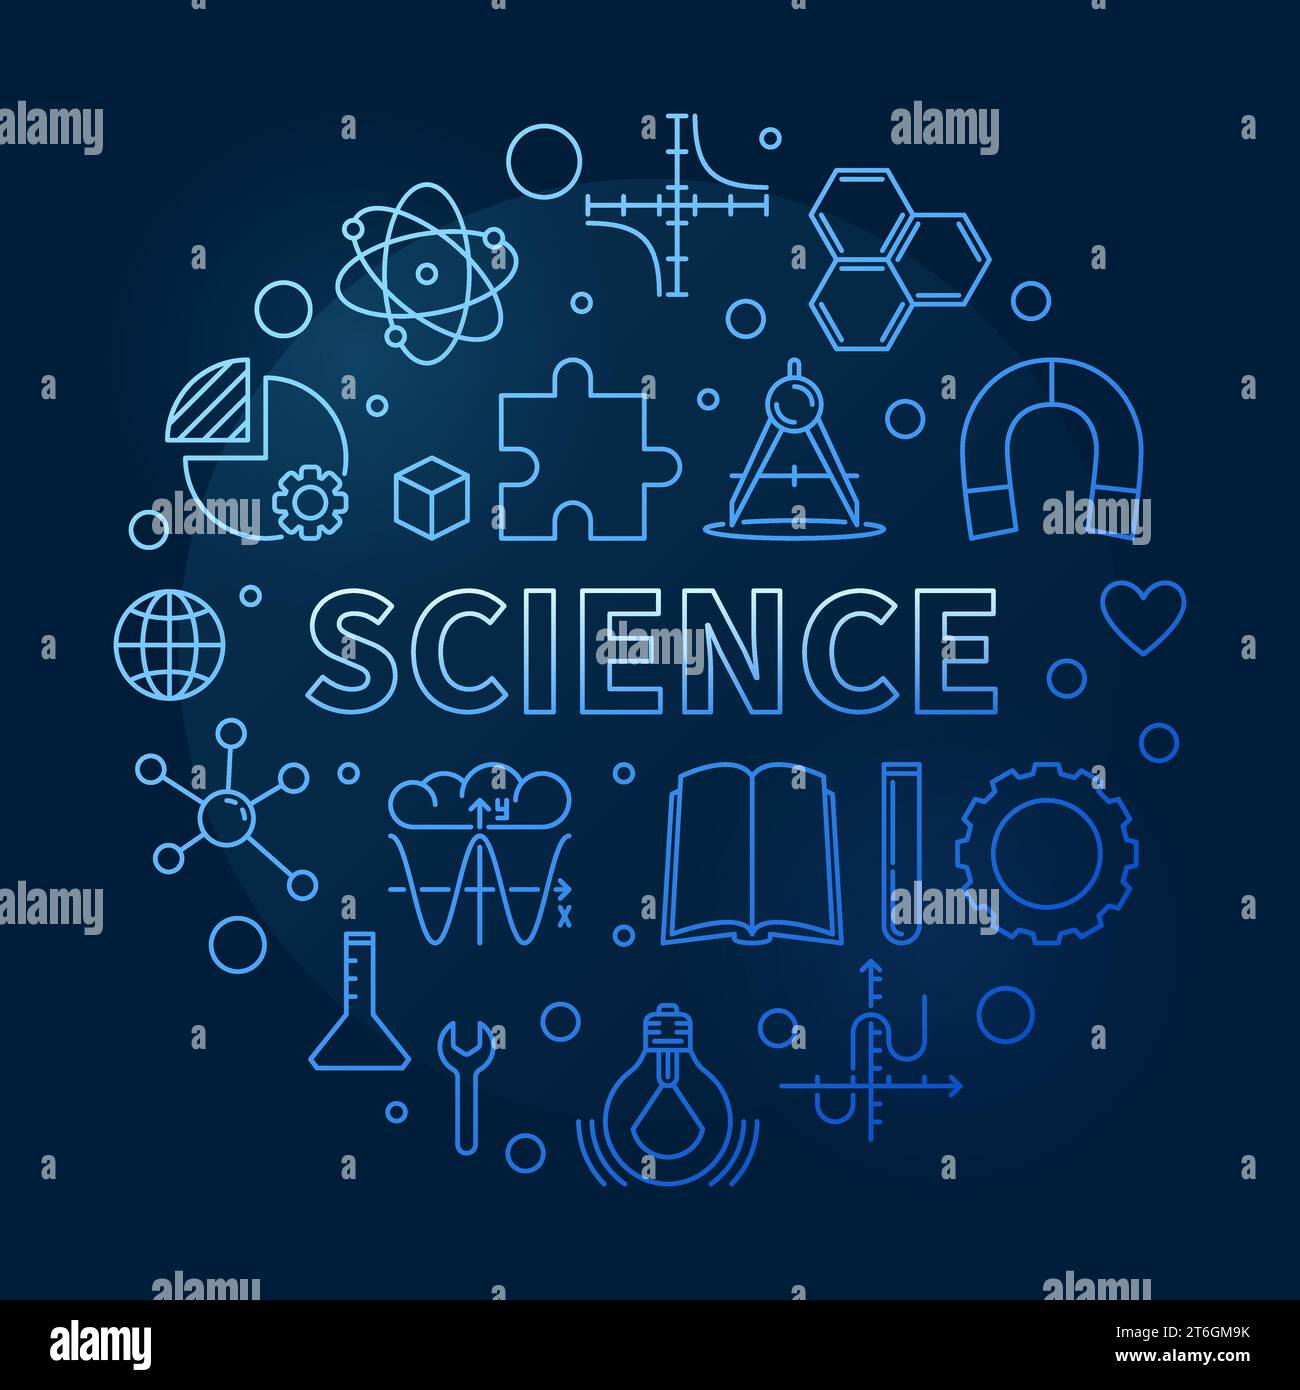 Science circulaire vecteur minimal illustration bleue de ligne mince ou bannière avec fond sombre Illustration de Vecteur